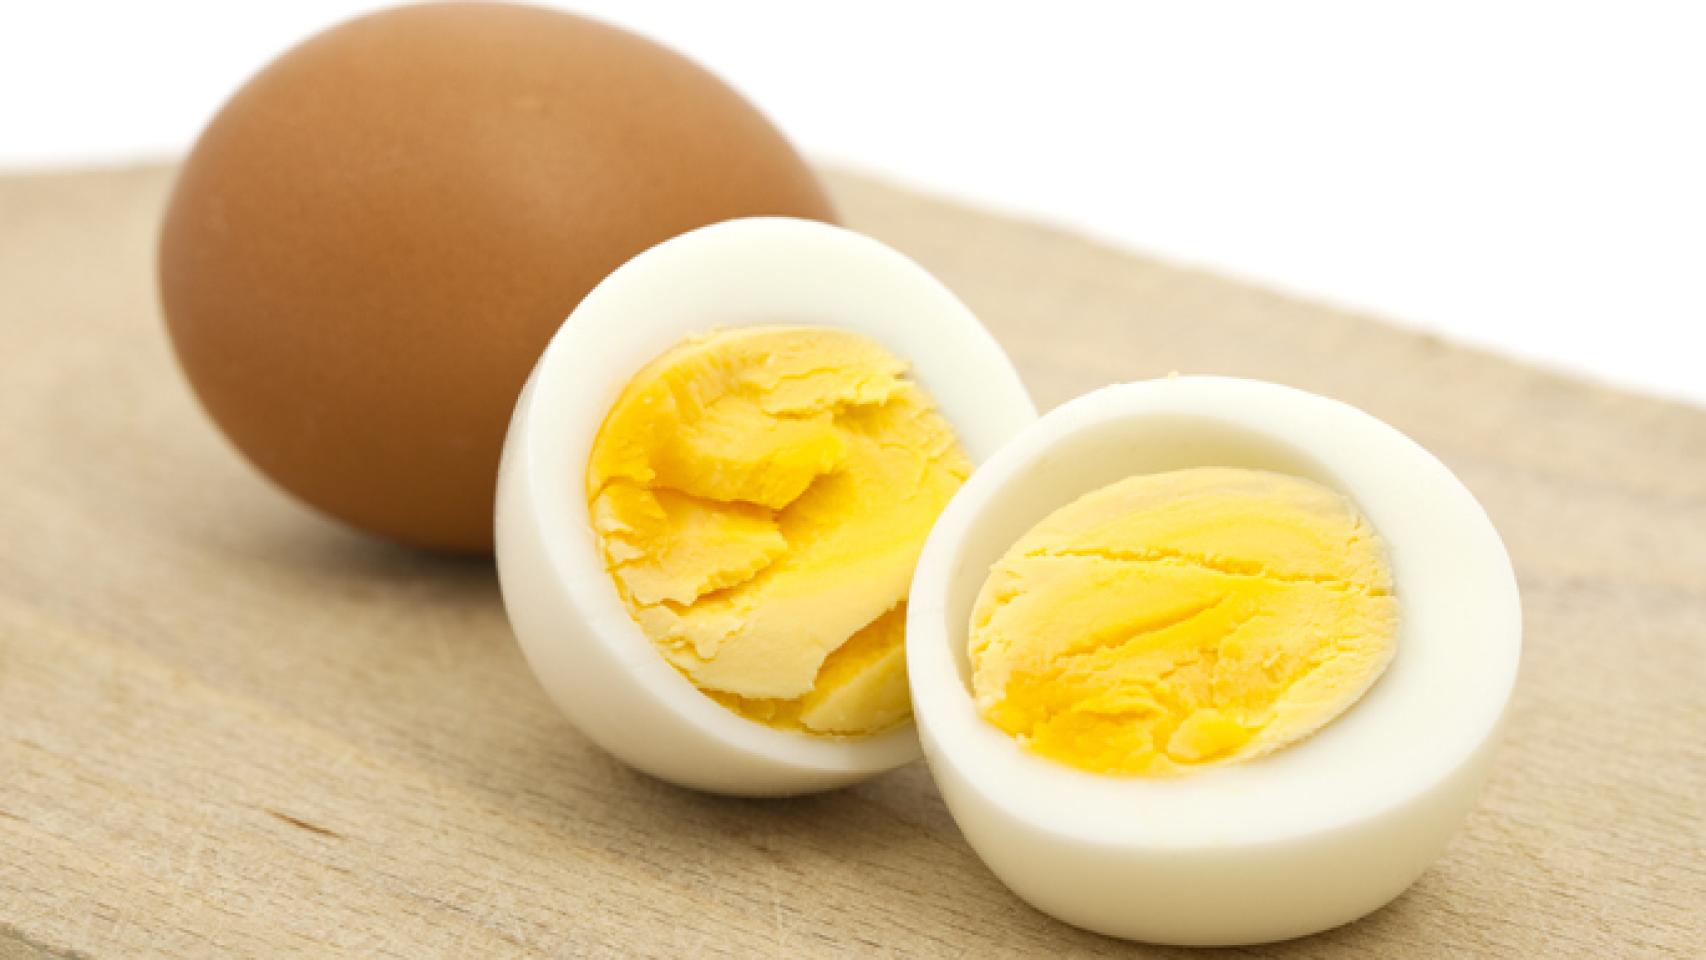 Cuánto duran los huevos en la nevera? Conservación